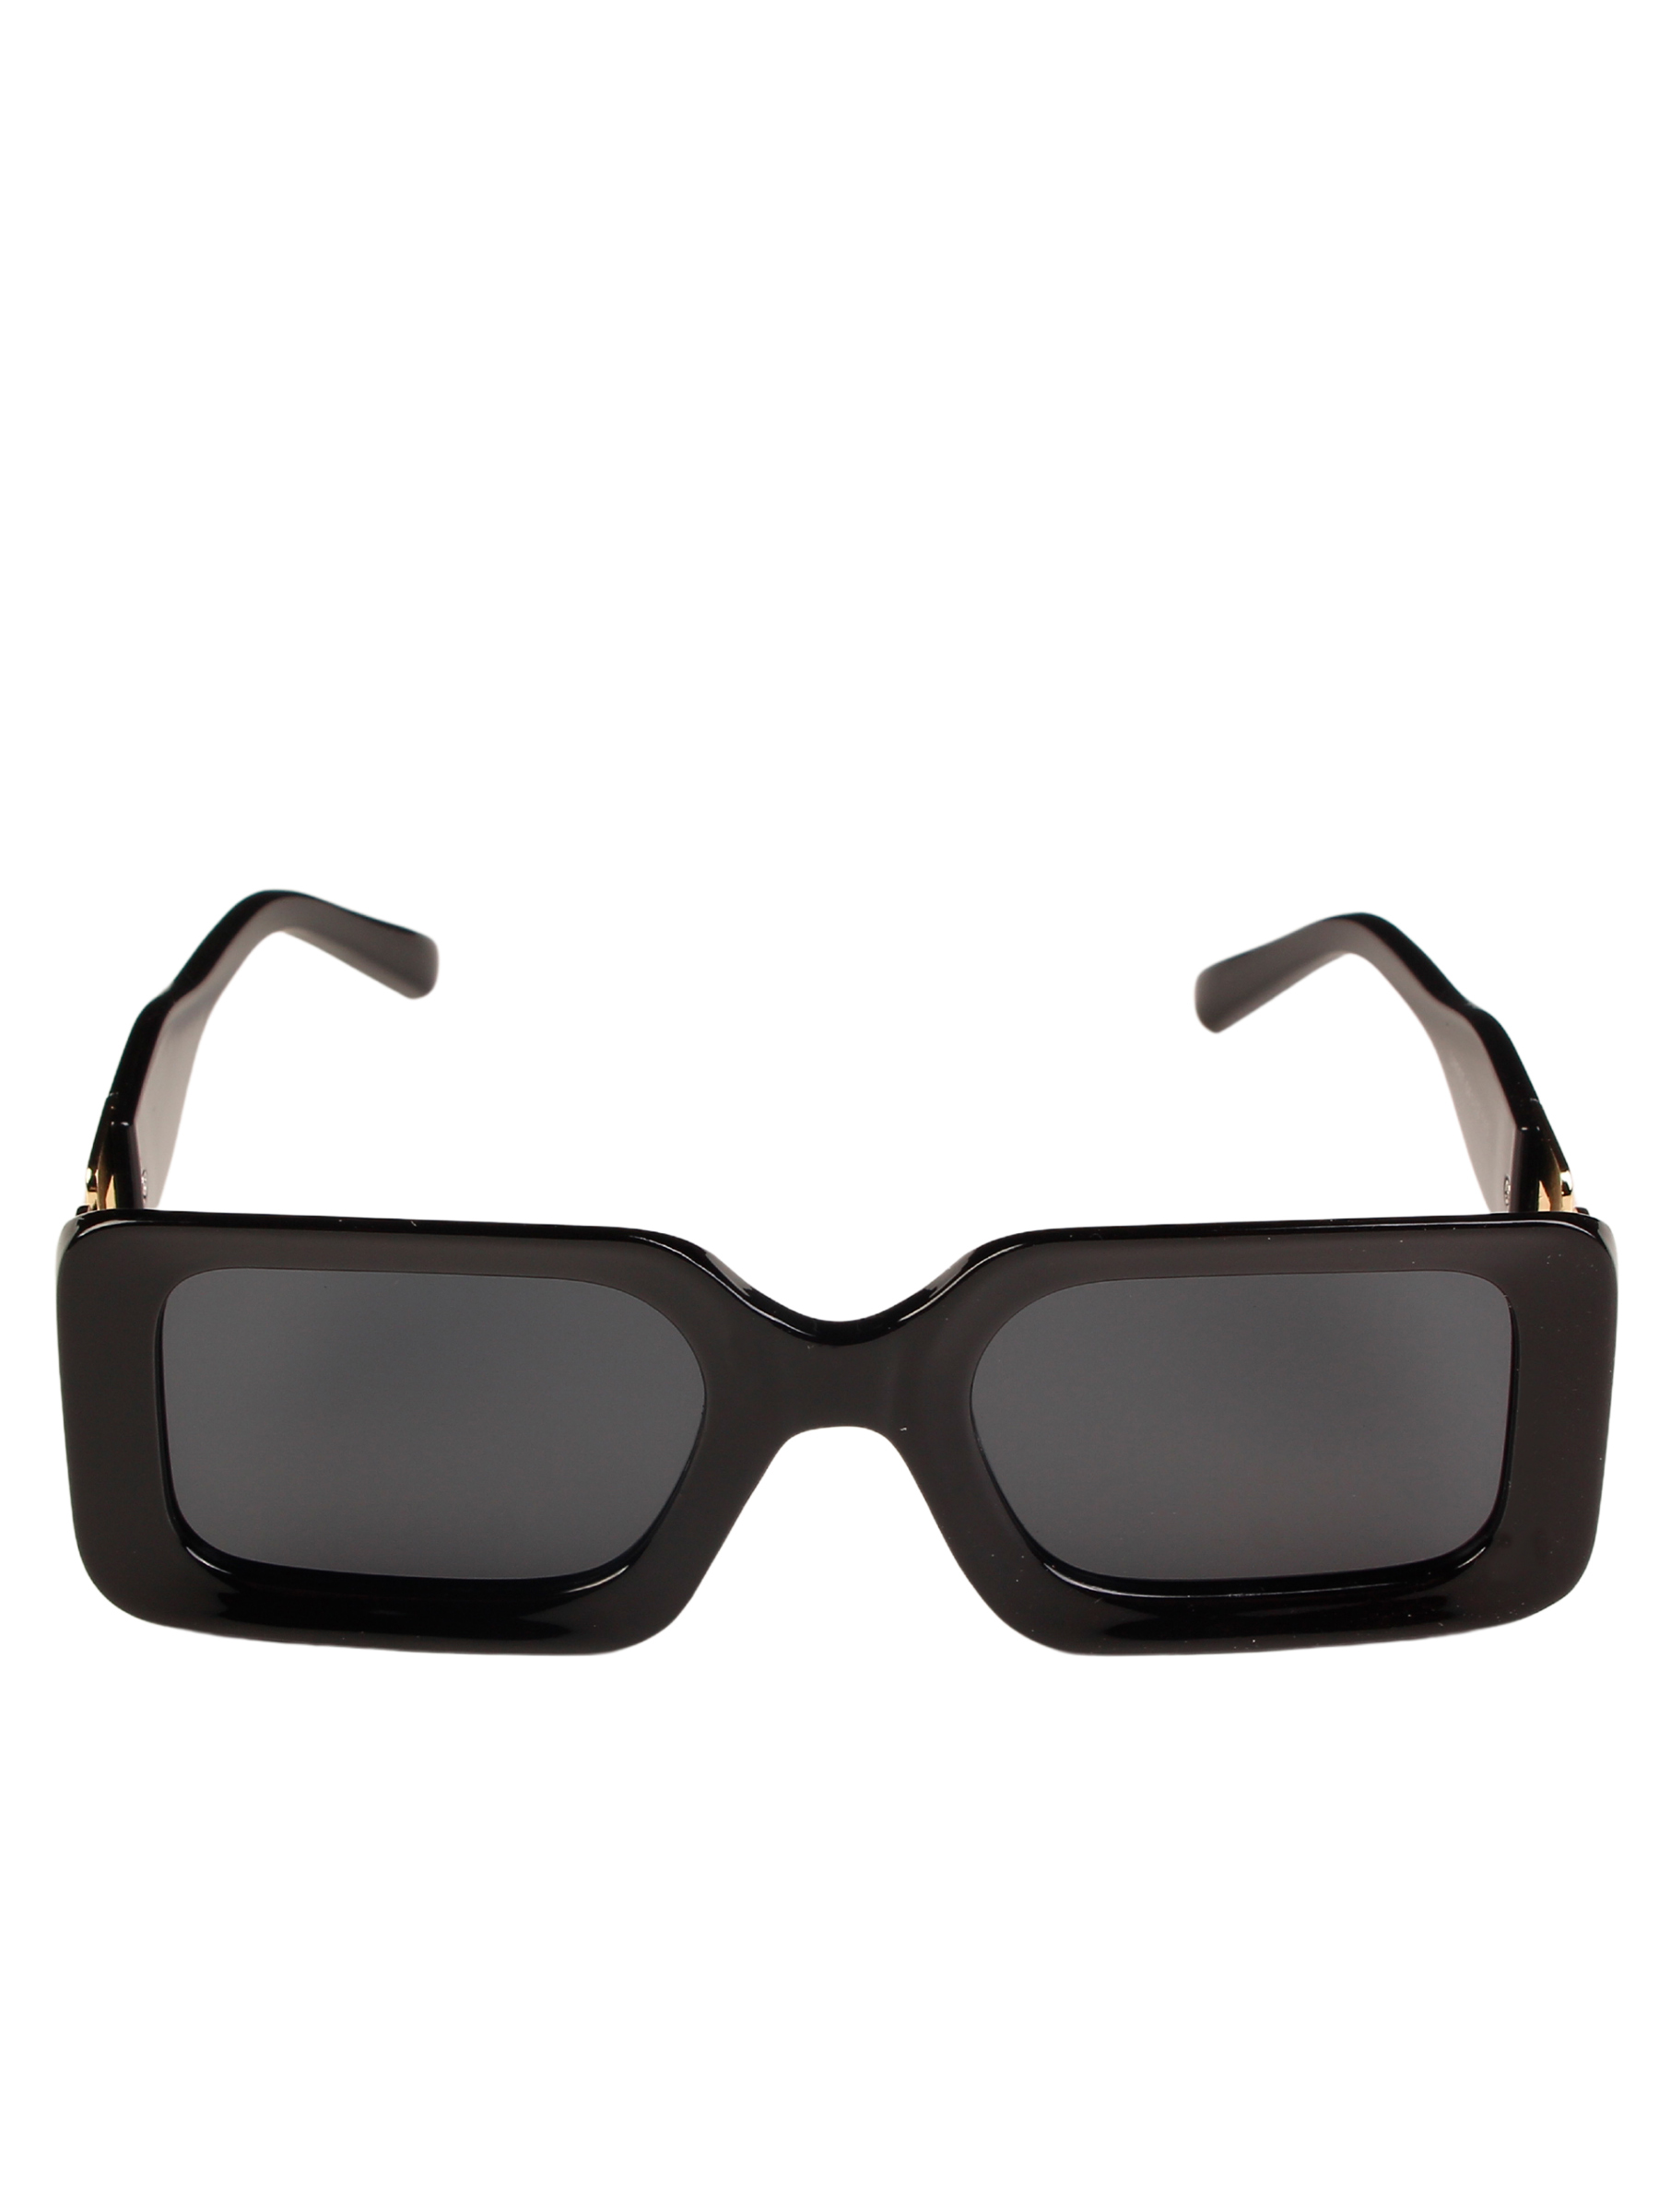 фото Солнцезащитные очки женские pretty mania dd044 черные/золотистые